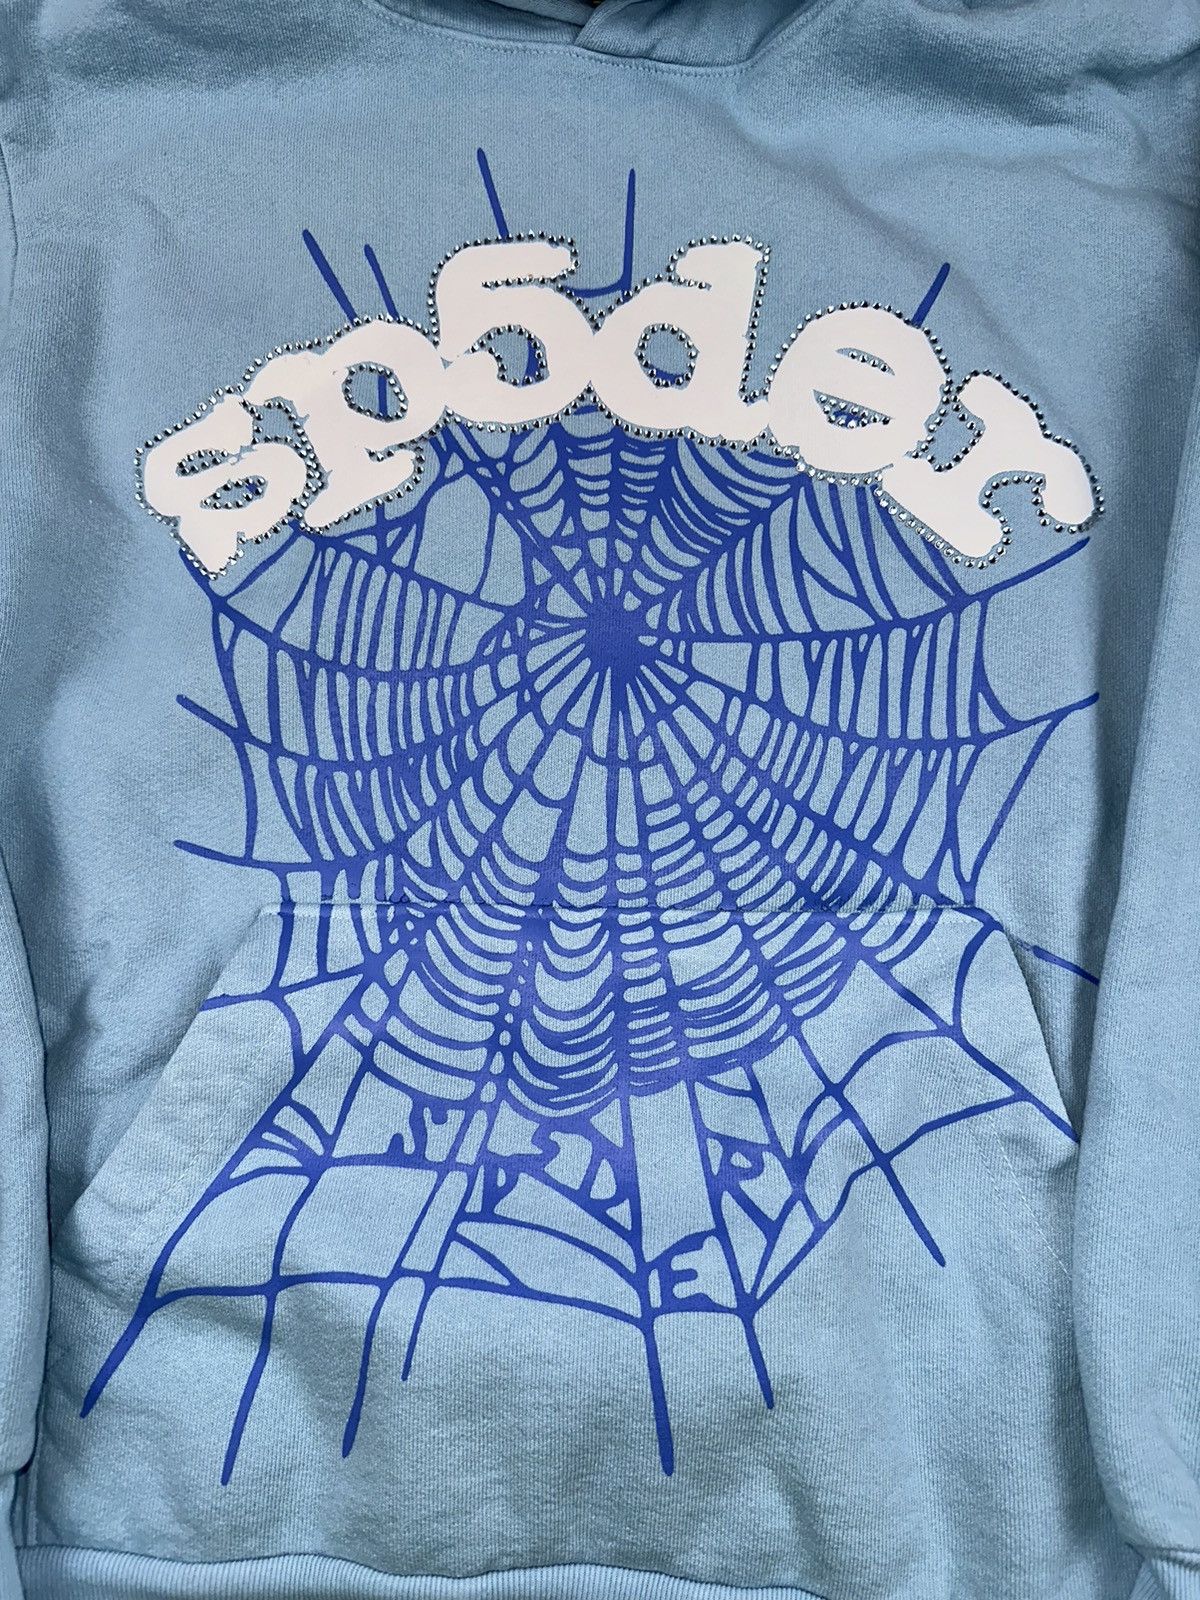 Spider Worldwide Sp5der 8 Days of Sp5der Hoodie | Grailed